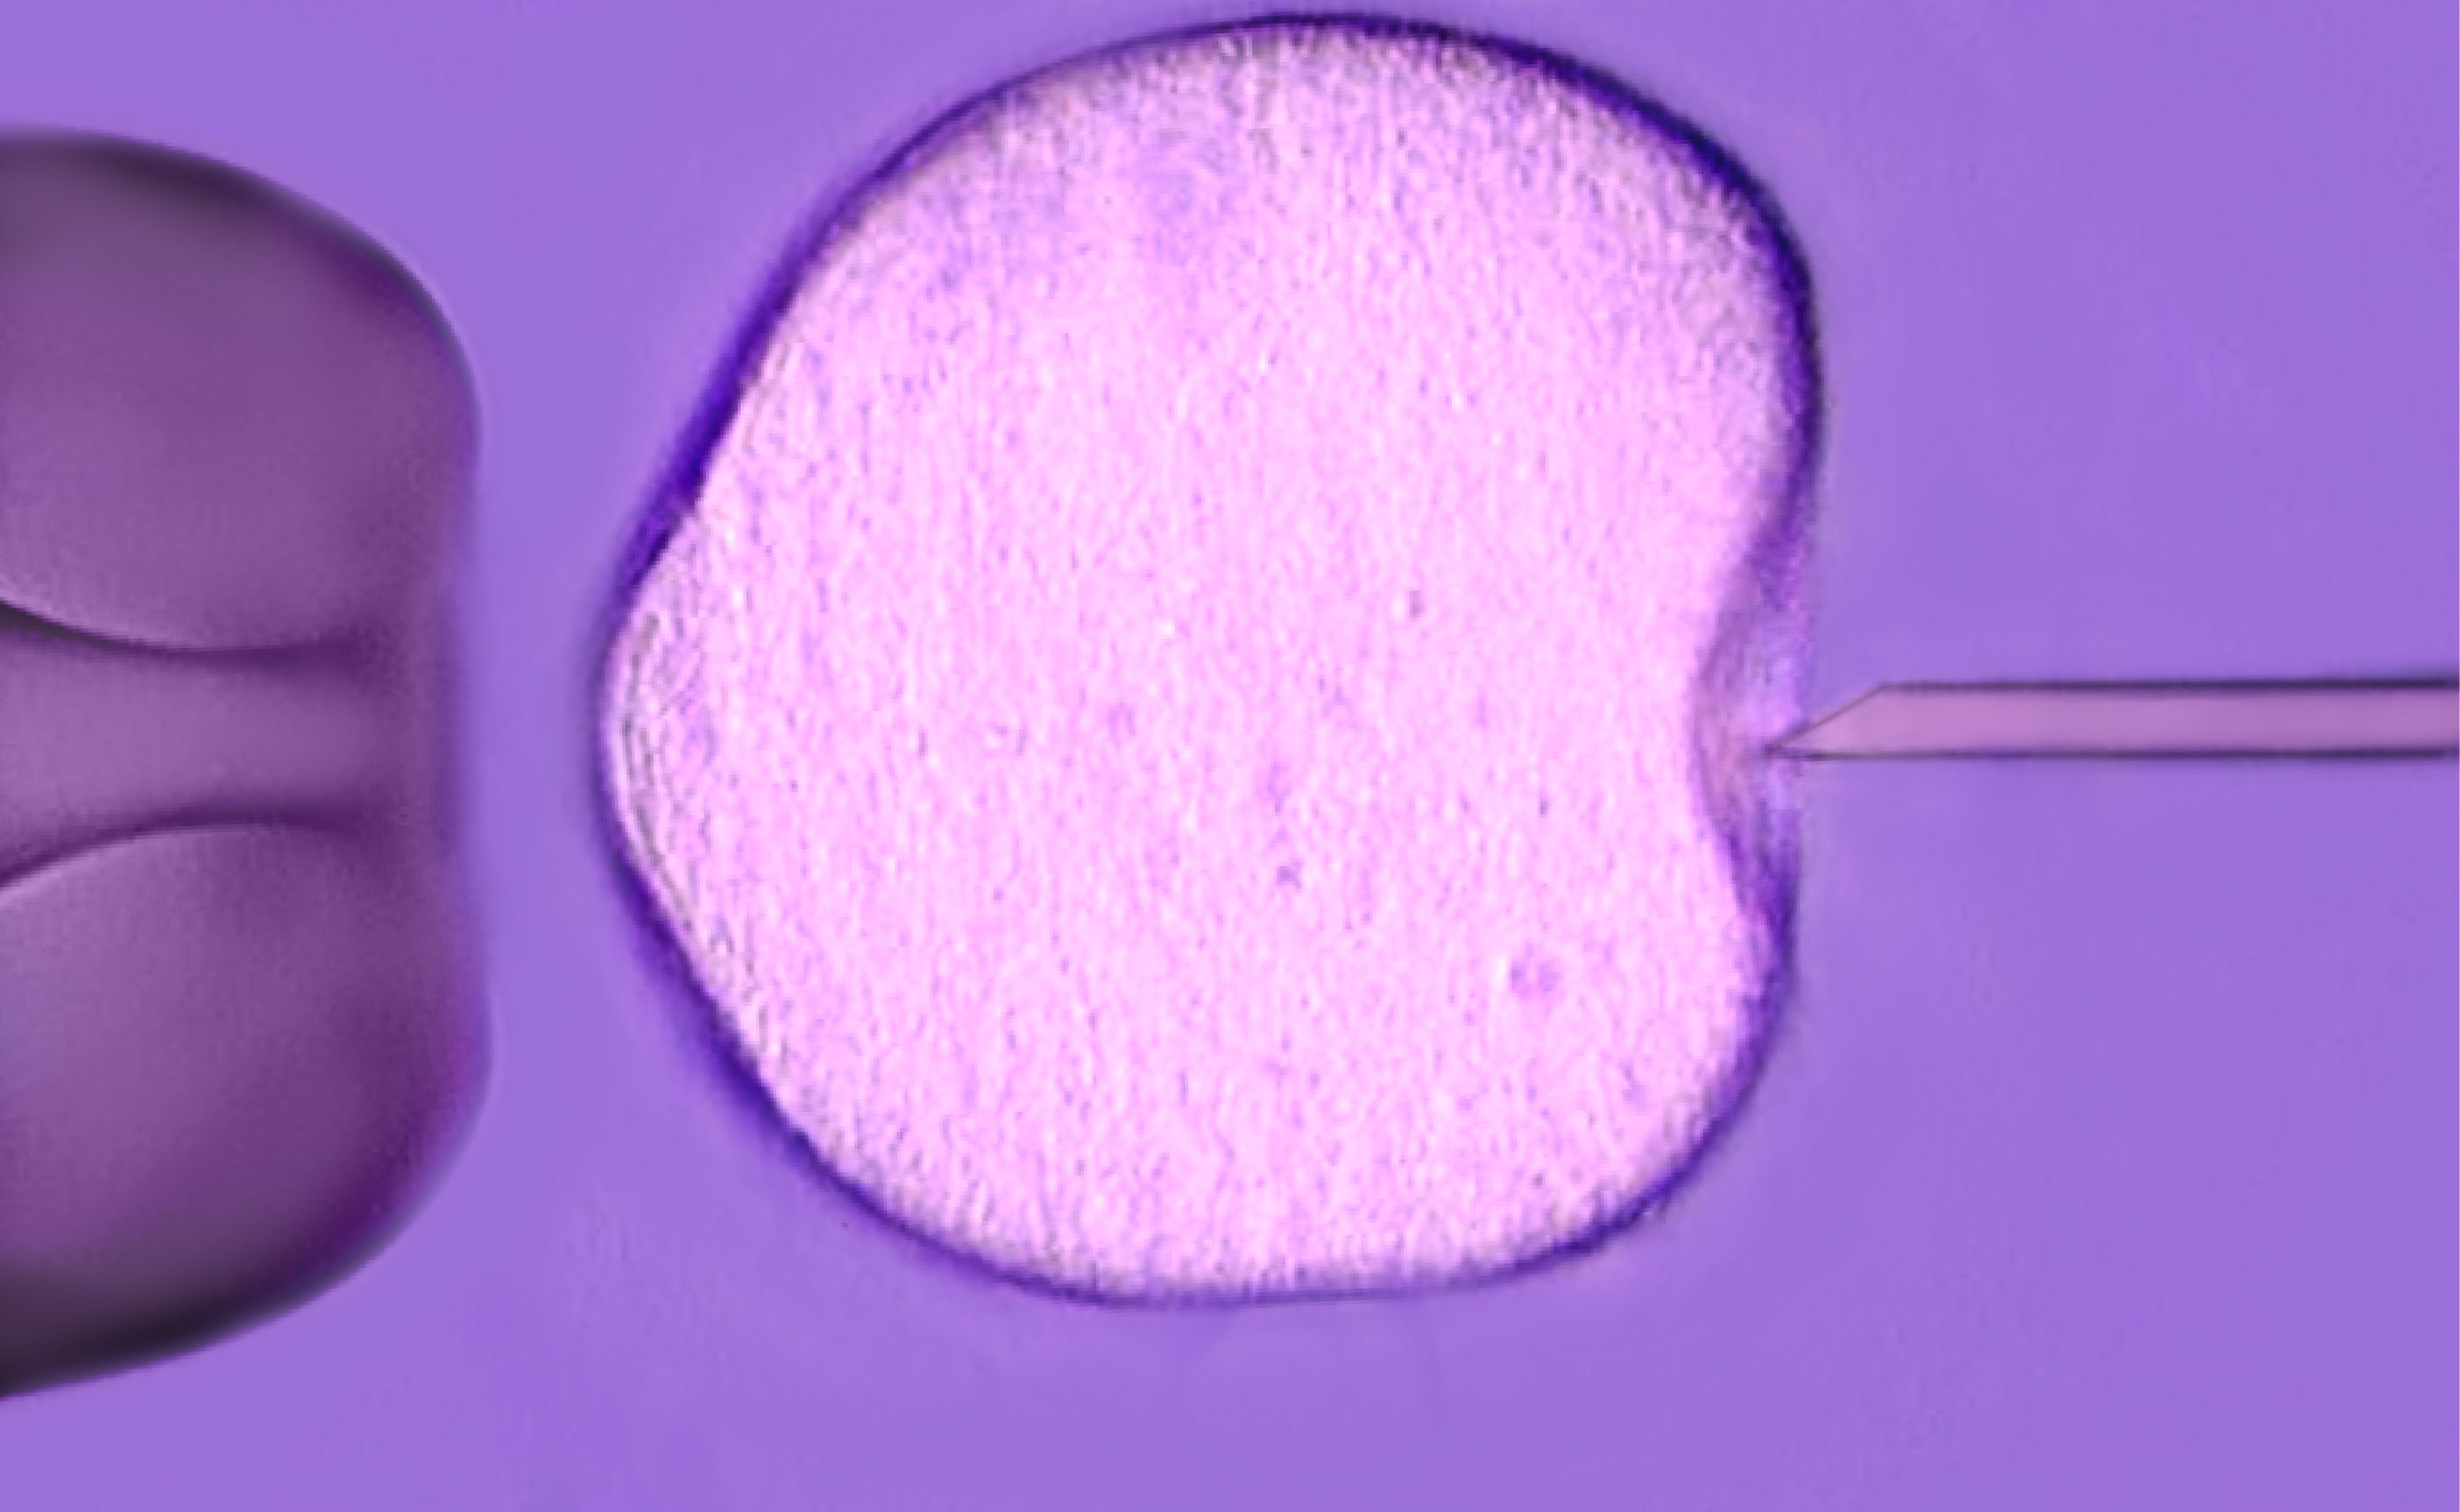 Ivf - in vitro fertilization microscopic photo